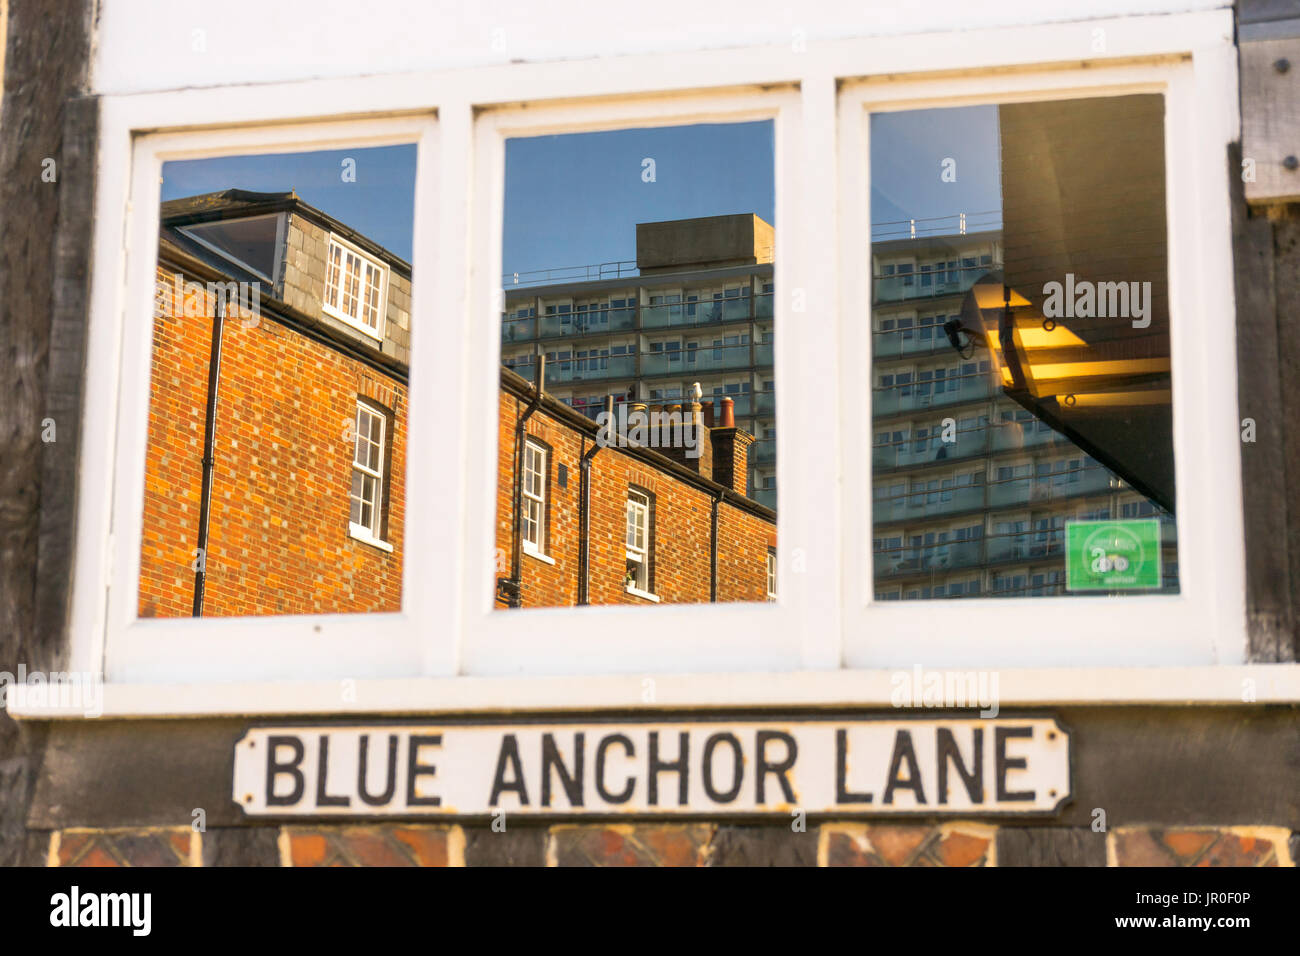 Blauer Anker Lane - Reflexion von Gebäuden in einem Fenster eines Gebäudes in der historischen Altstadt von Southampton, England, UK Stockfoto